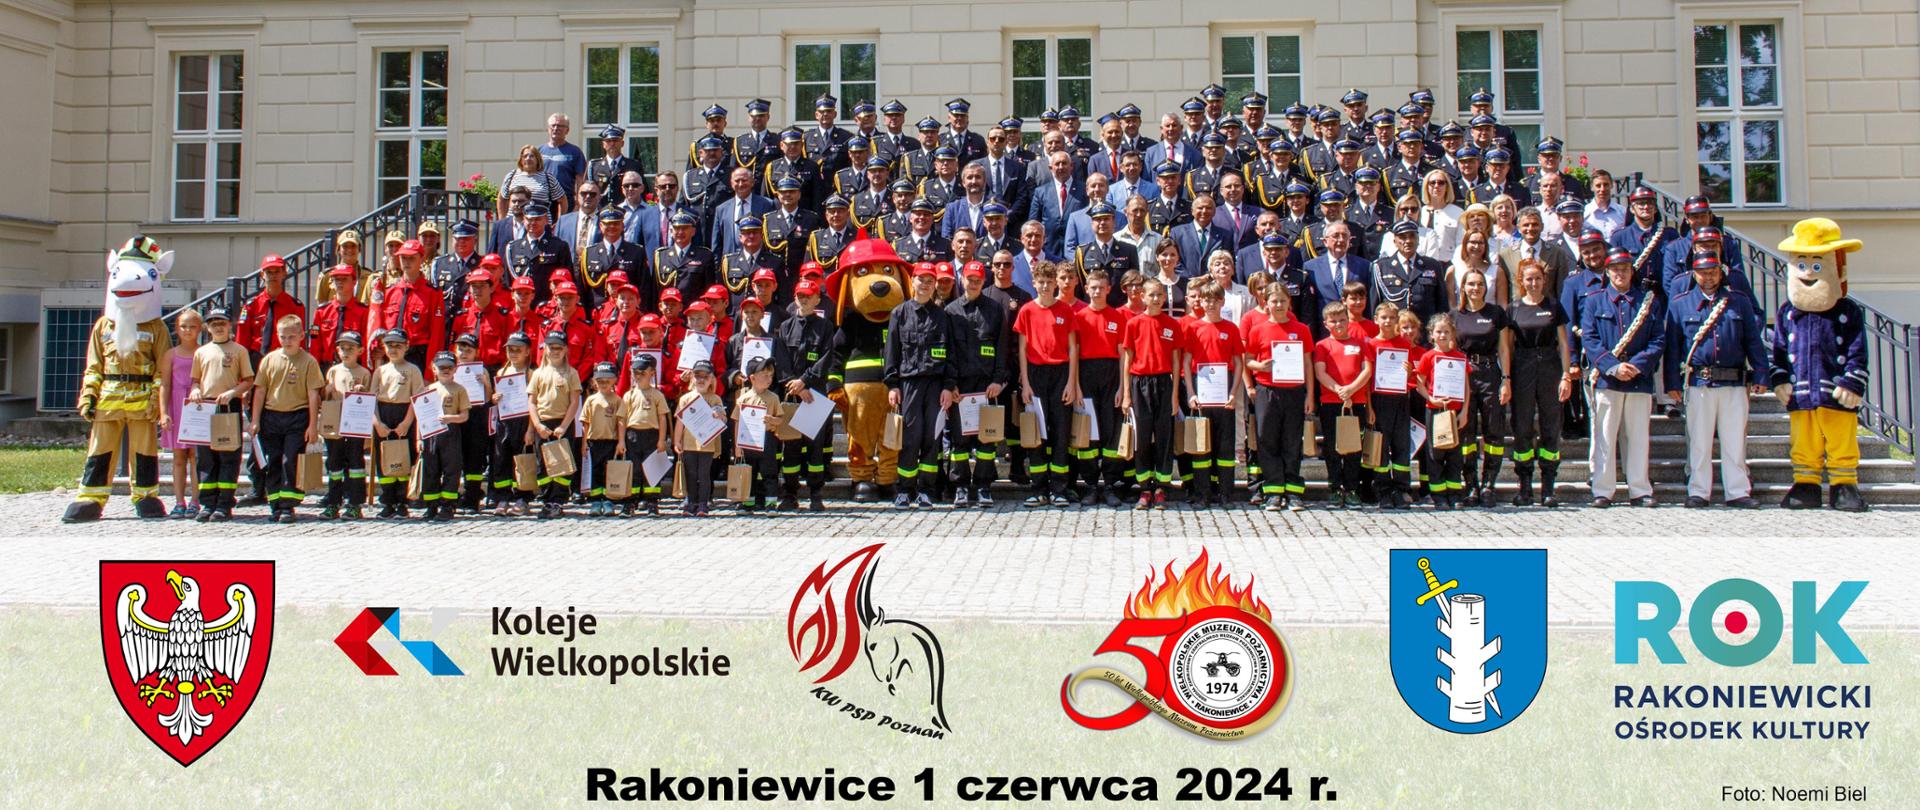 Wielkopolskie Wojewódzkie Obchody Dnia Strażaka 2024